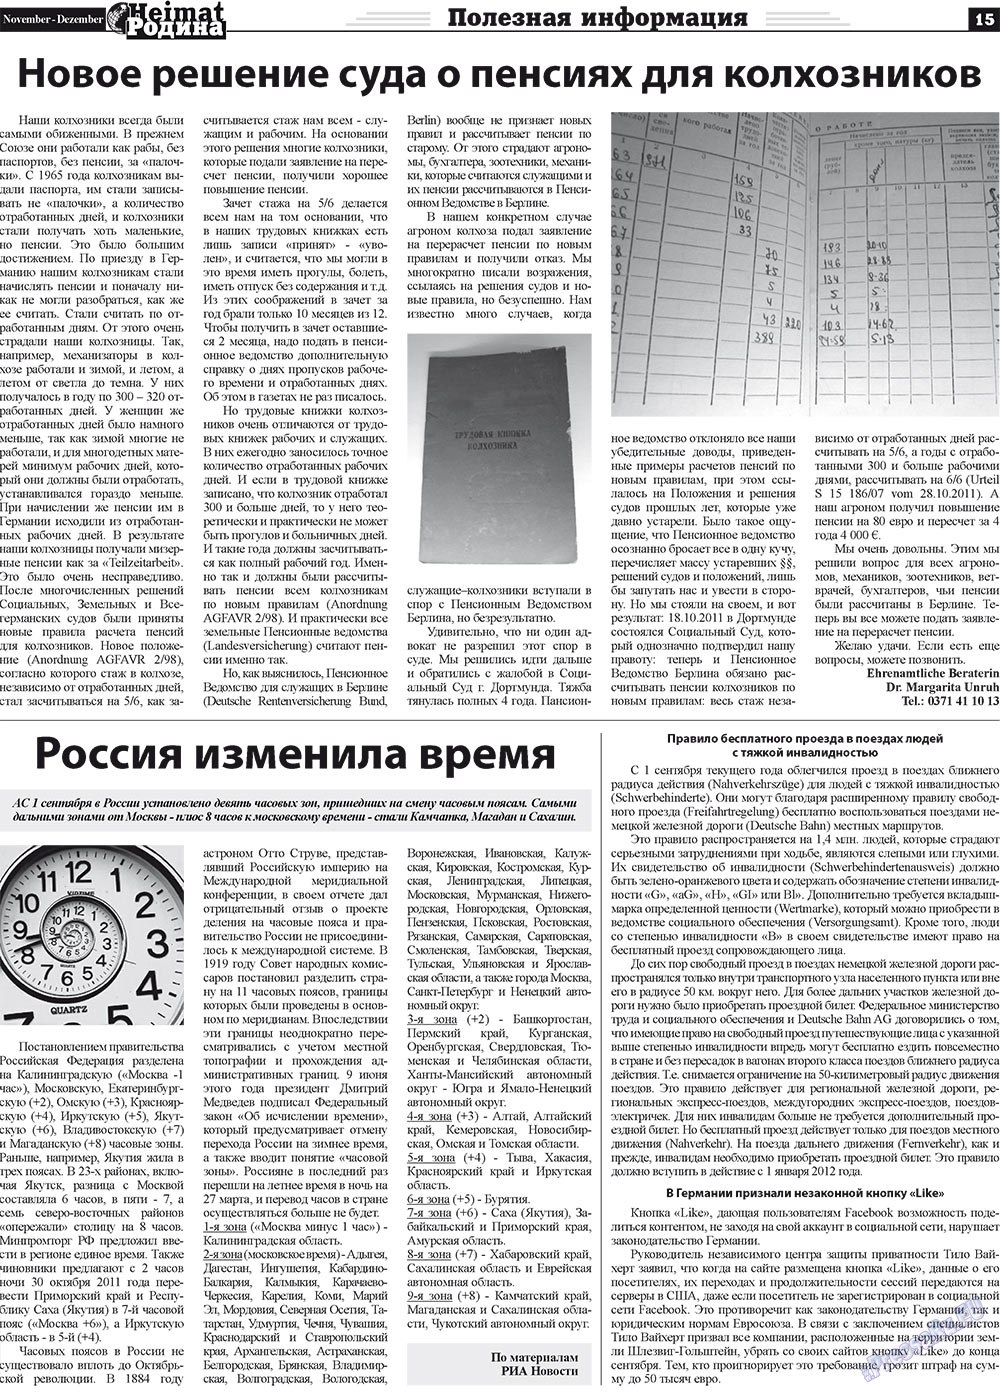 Heimat-Родина (газета). 2011 год, номер 11, стр. 15